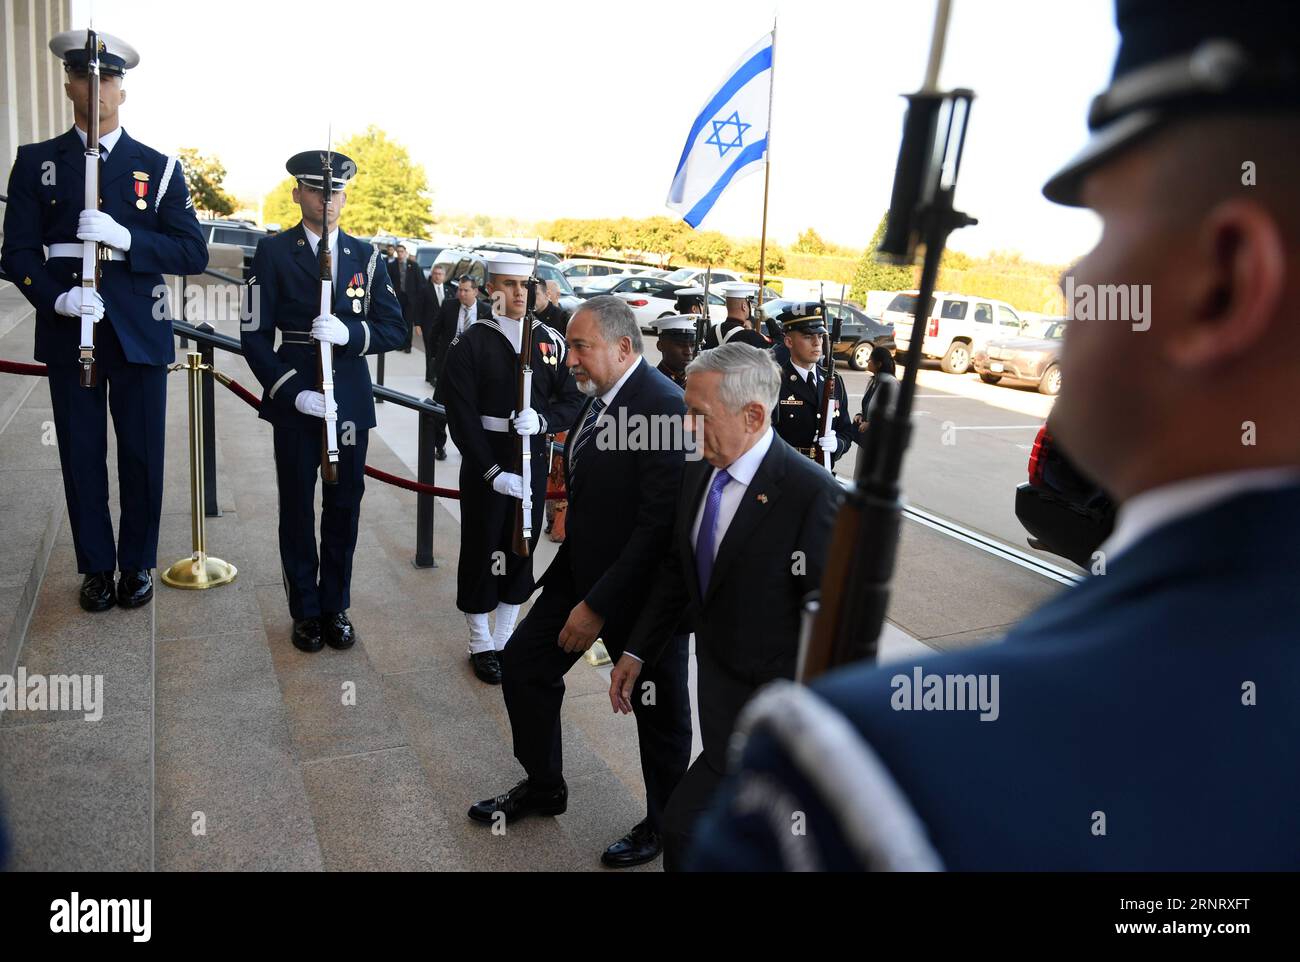 Bilder des Tages (171019) - WASHINGTON, 19 ottobre 2017 - il segretario alla difesa statunitense Jim Mattis (C-R) dà il benvenuto al ministro della difesa israeliano Avigdor Lieberman (C-L) prima del loro incontro al Pentagono a Washington D.C., negli Stati Uniti, il 19 ottobre 2017. ) U.S.-WASHINGTON D.C.-ISRAELE-MINISTRO DELLA DIFESA-VISITA YINXBOGU PUBLICATIONXNOTXINXCHN Foto Stock